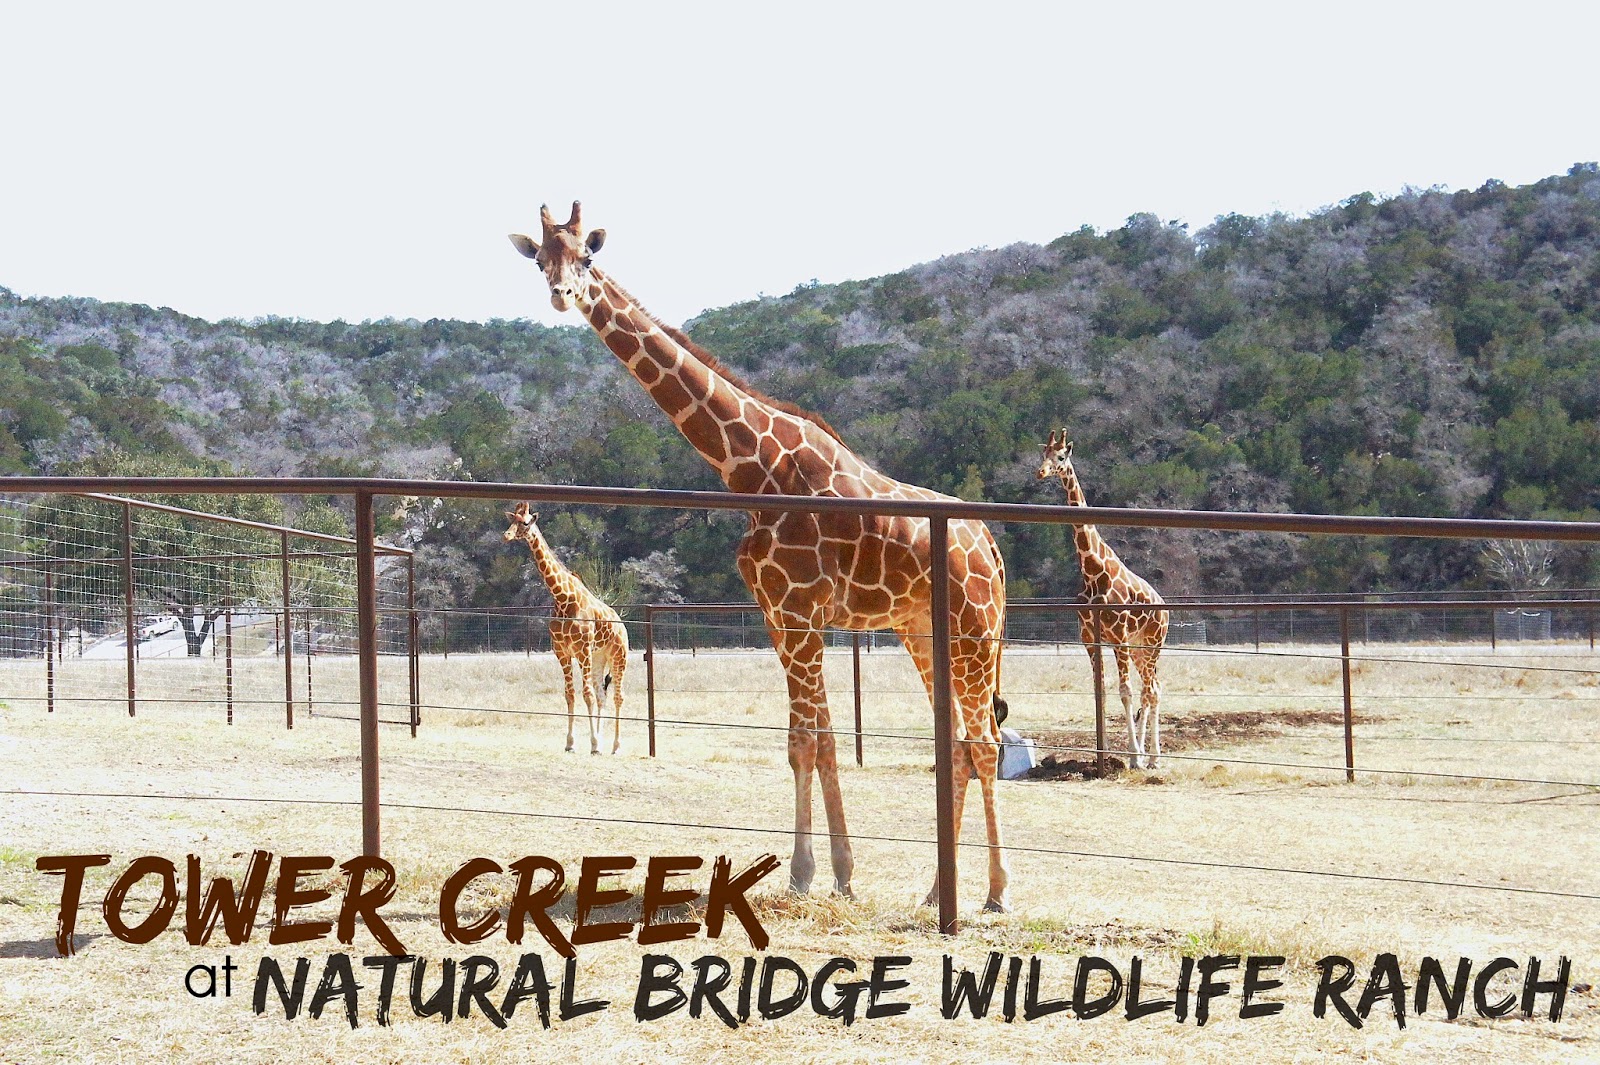 New! Tower Creek at the Natural Bridge Wildlife Ranch